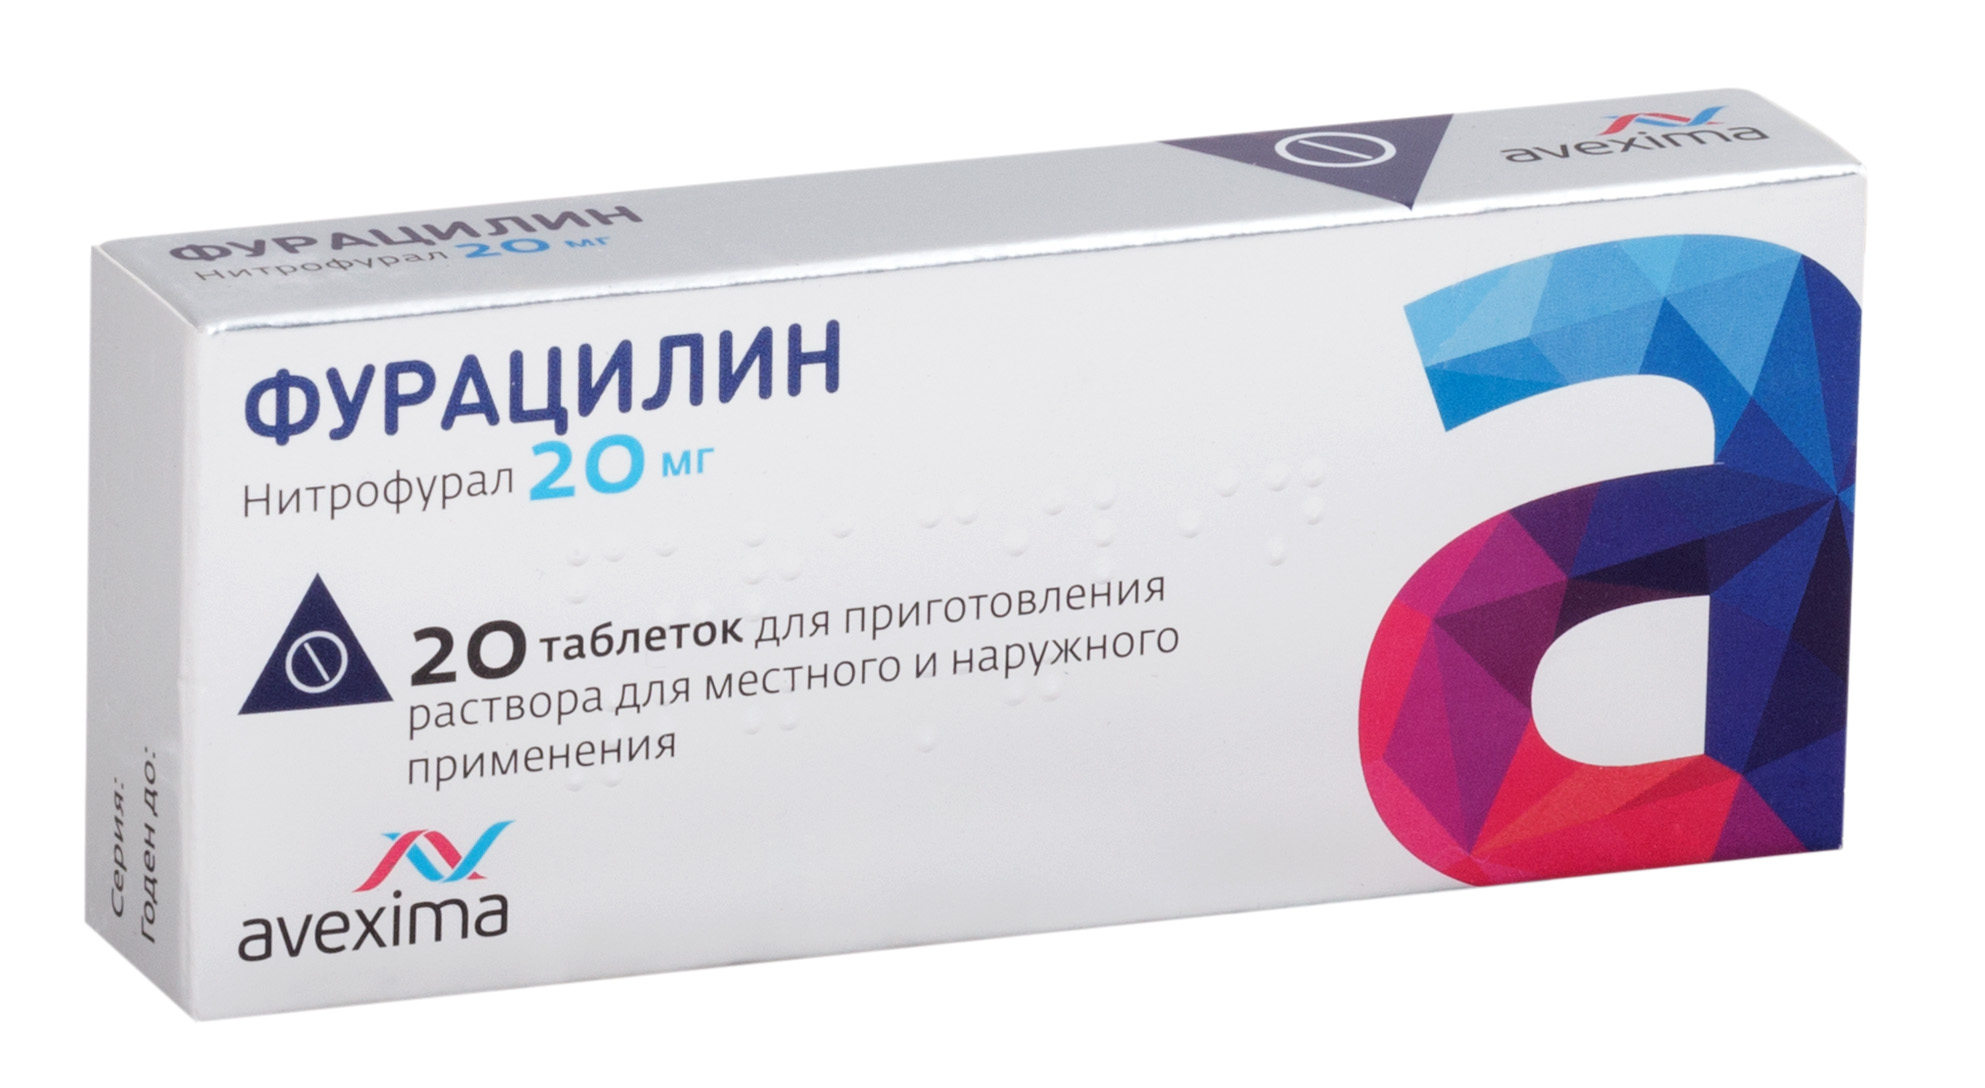 Фурацилин таб. растворимые 20мг №20 (Нитрофурал) антисептик (Авексима)